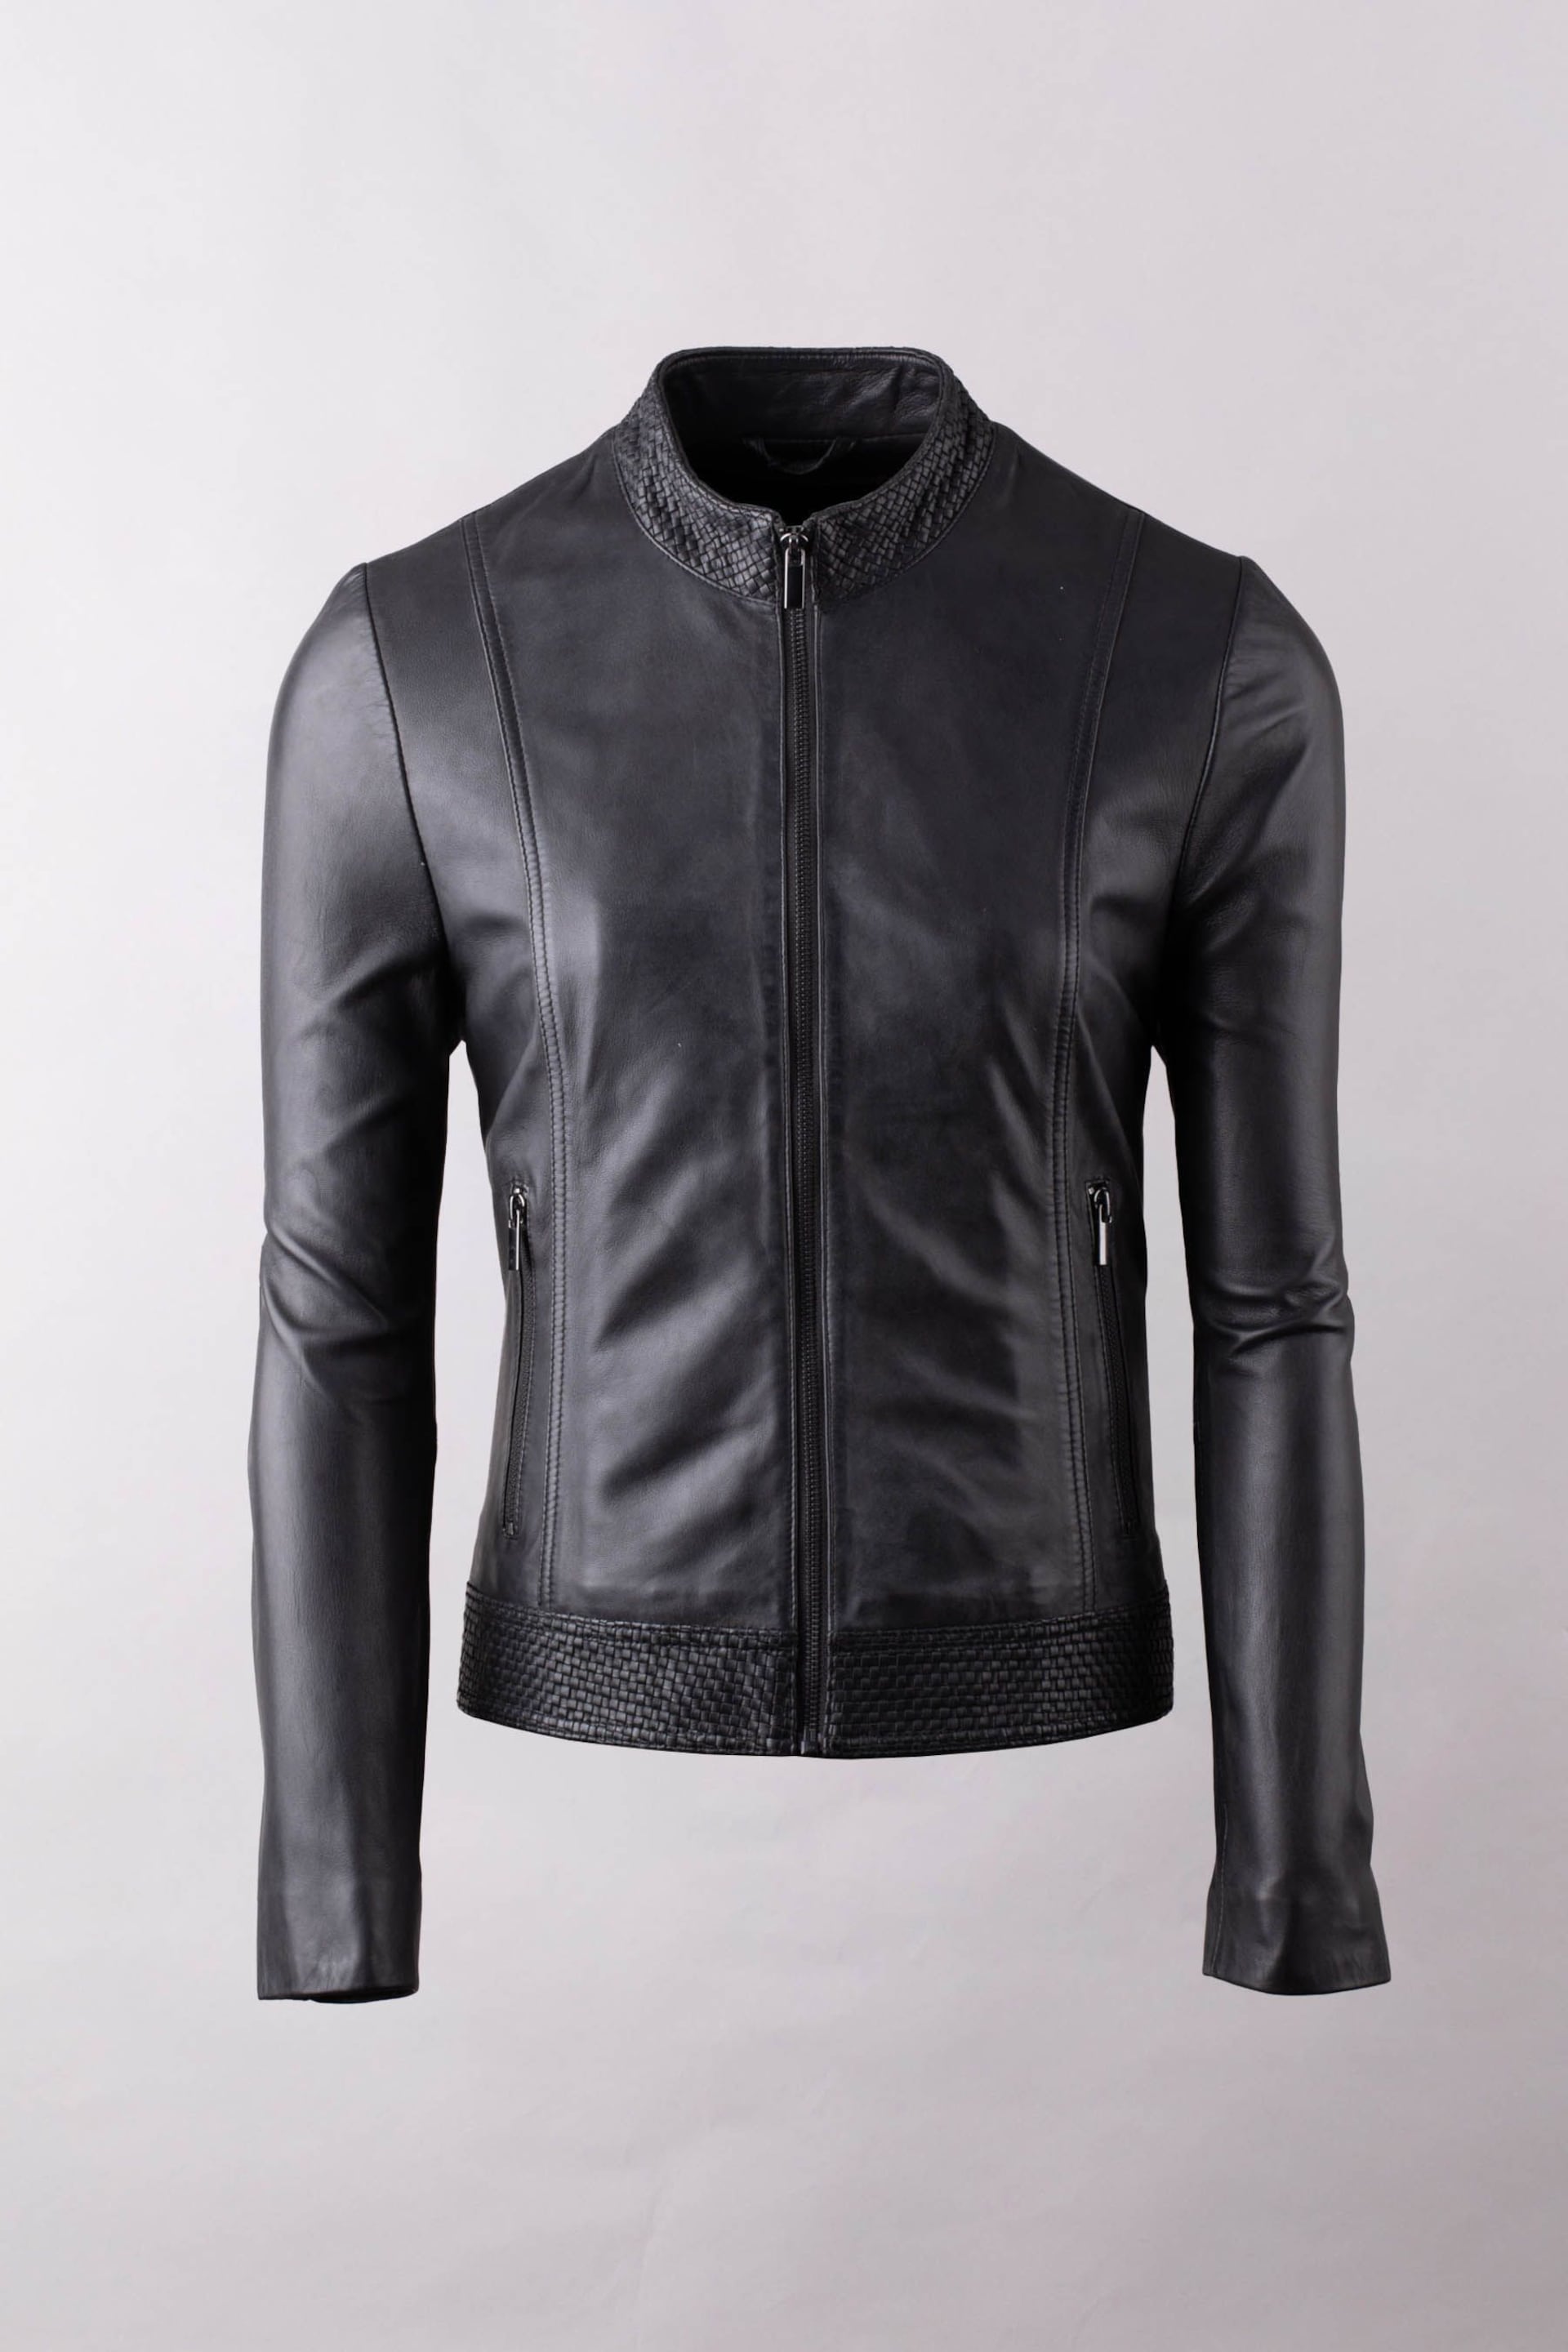 Lakeland Leather Black Anthorn Leather Jacket - Image 2 of 7